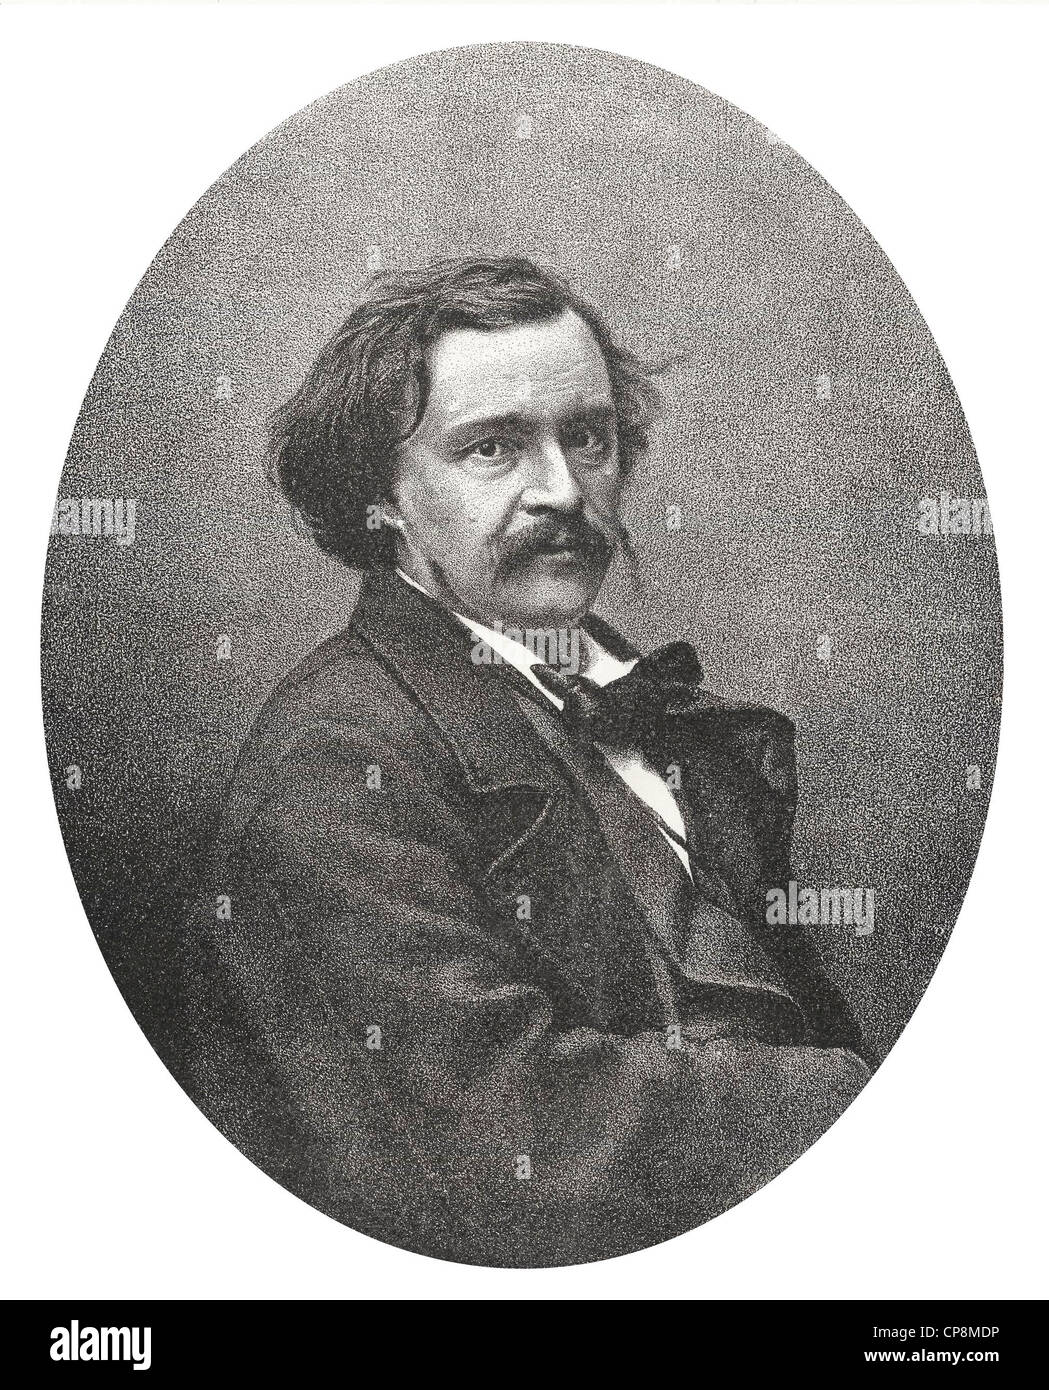 Gaspard-Félix Tournachon ou Nadar, 1820 - 1910, un photographe français, écrivain et illustrateur, gravure sur acier à partir de l'historique Banque D'Images